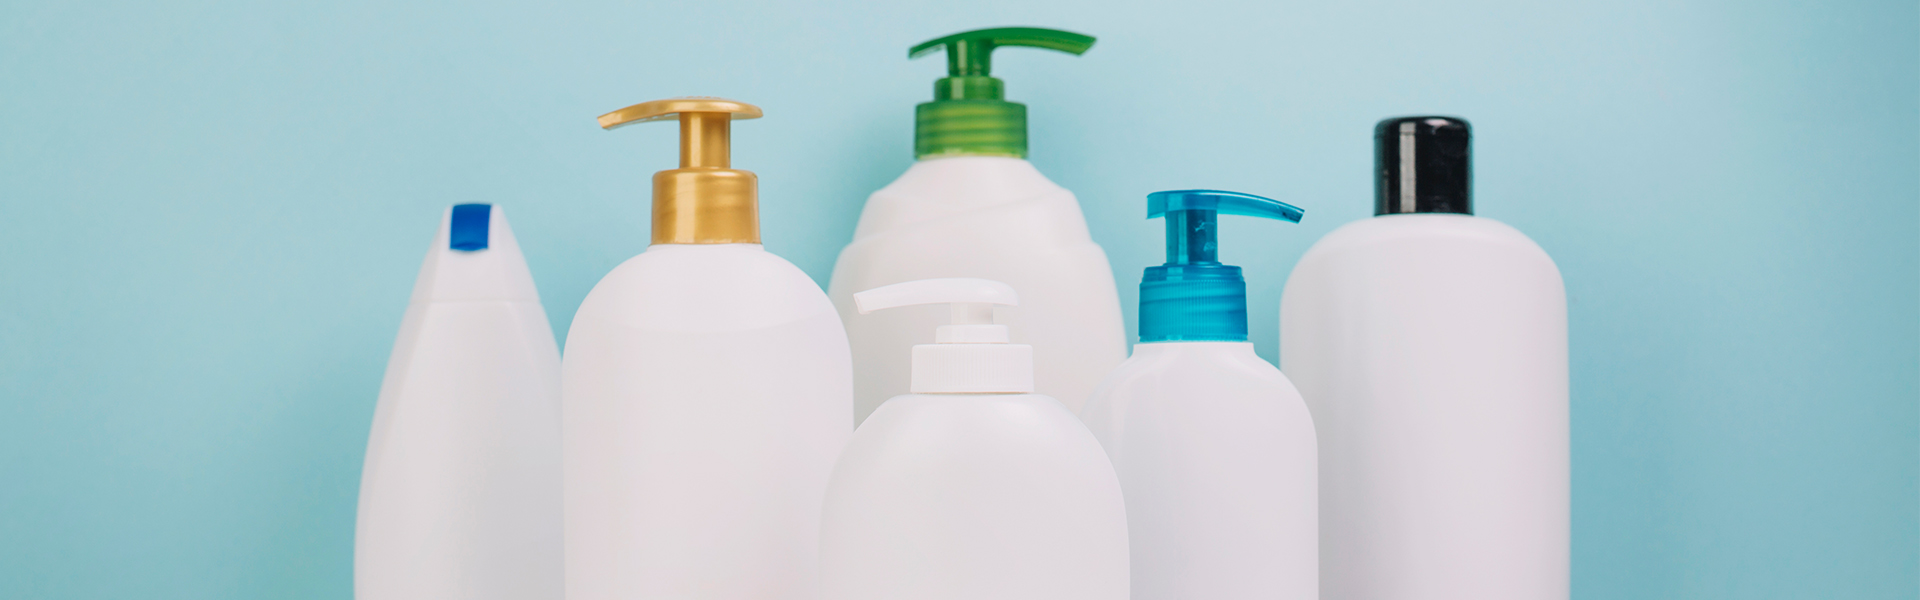 Envases para jabón líquido y shampoo: ¡amplio catálogo aquí!